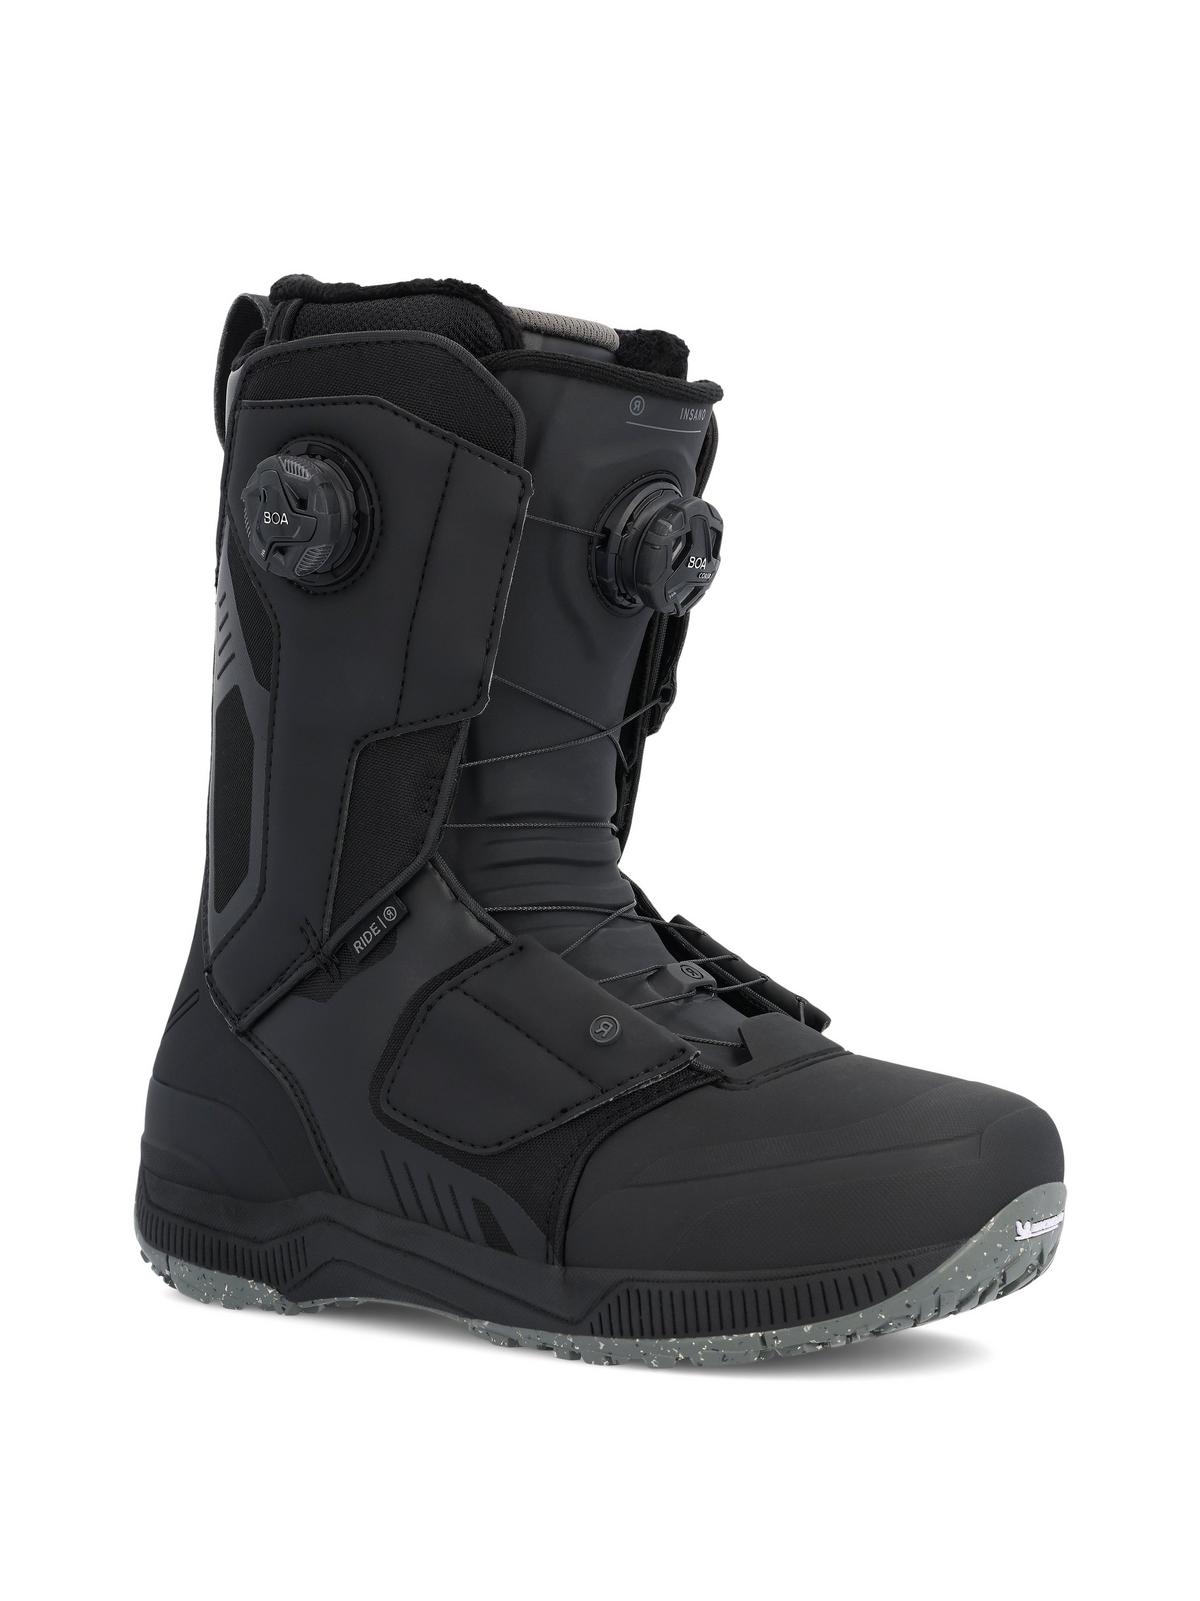 RIDE Insano Snowboard Boots 2023 | RIDE Snowboards